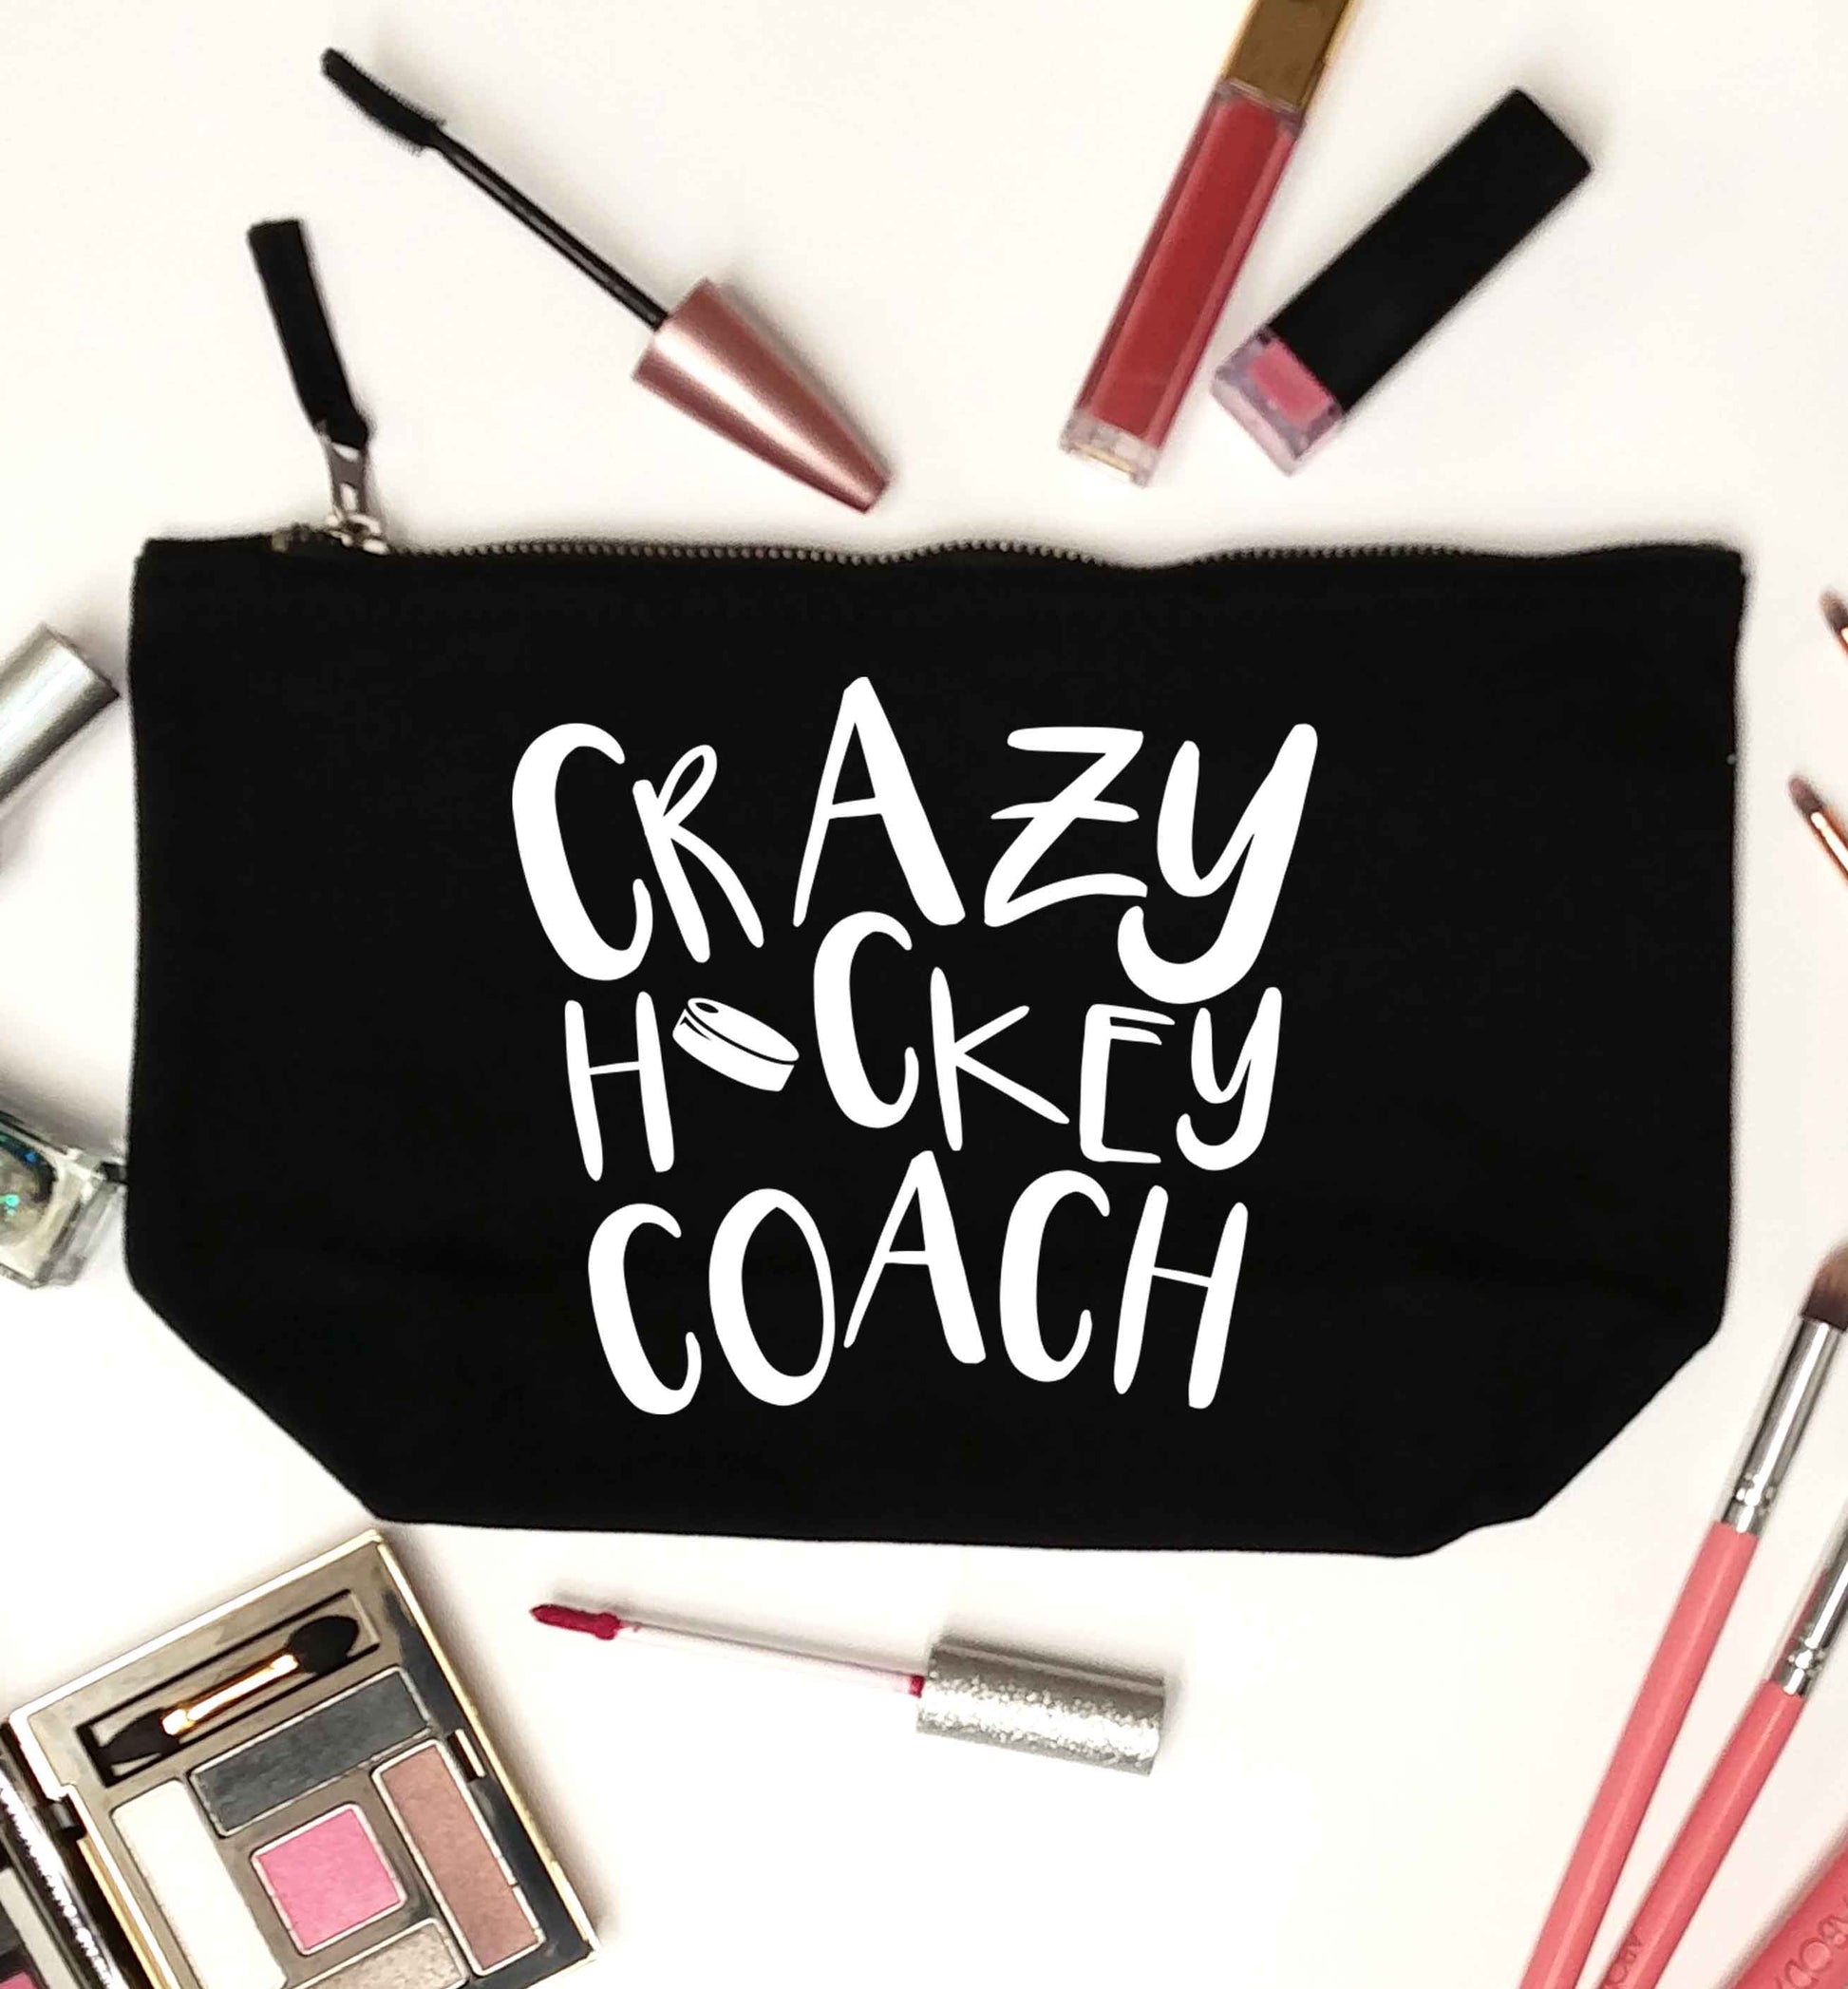 Crazy hockey coach black makeup bag